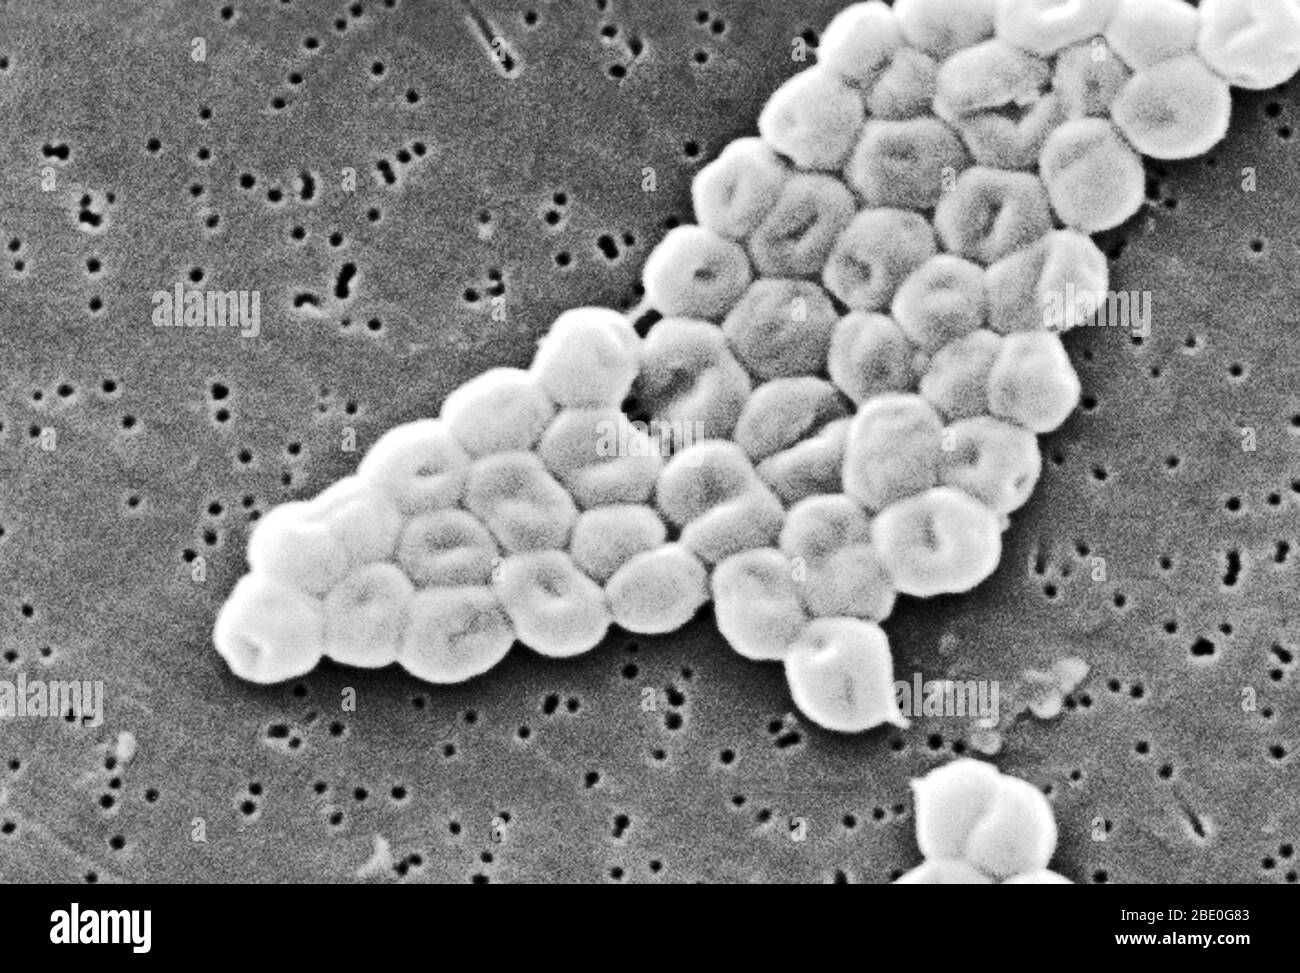 SEM rappresenta un gruppo altamente ingrandito di batteri acinetobacter baumannii Gram-negativi, non-motili; Mag - 13331x. I membri del genere Acinetobacter sono verghe non mottili, di 1-1.5µm di diametro e di 1.5-2.5µm di lunghezza, diventando di forma sferica durante la loro fase stazionaria di crescita. L'Acinetobacter baumannii è una specie di batteri patogeni, chiamati batterio aerobico gram-negativo, che è resistente alla maggior parte degli antibiotici. Come risultato della sua resistenza al trattamento farmacologico, alcune stime dichiarano che la malattia sta uccidendo decine di migliaia di pazienti ospedalieri statunitensi ogni anno. La malattia c Foto Stock